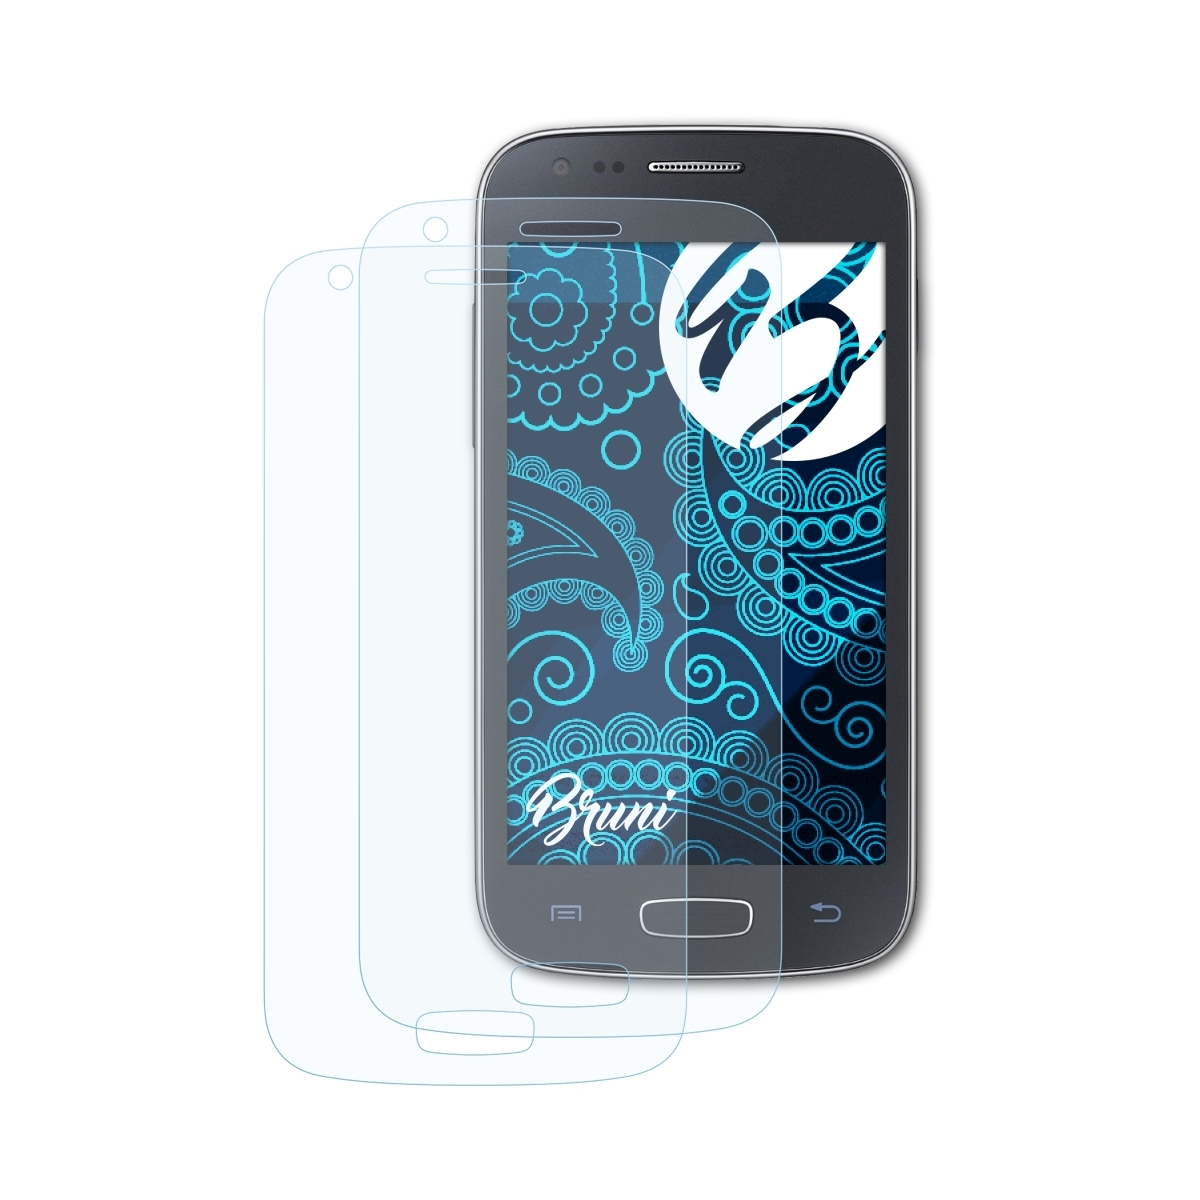 BRUNI 2x Basics-Clear Schutzfolie(für Samsung Ace Galaxy 3)